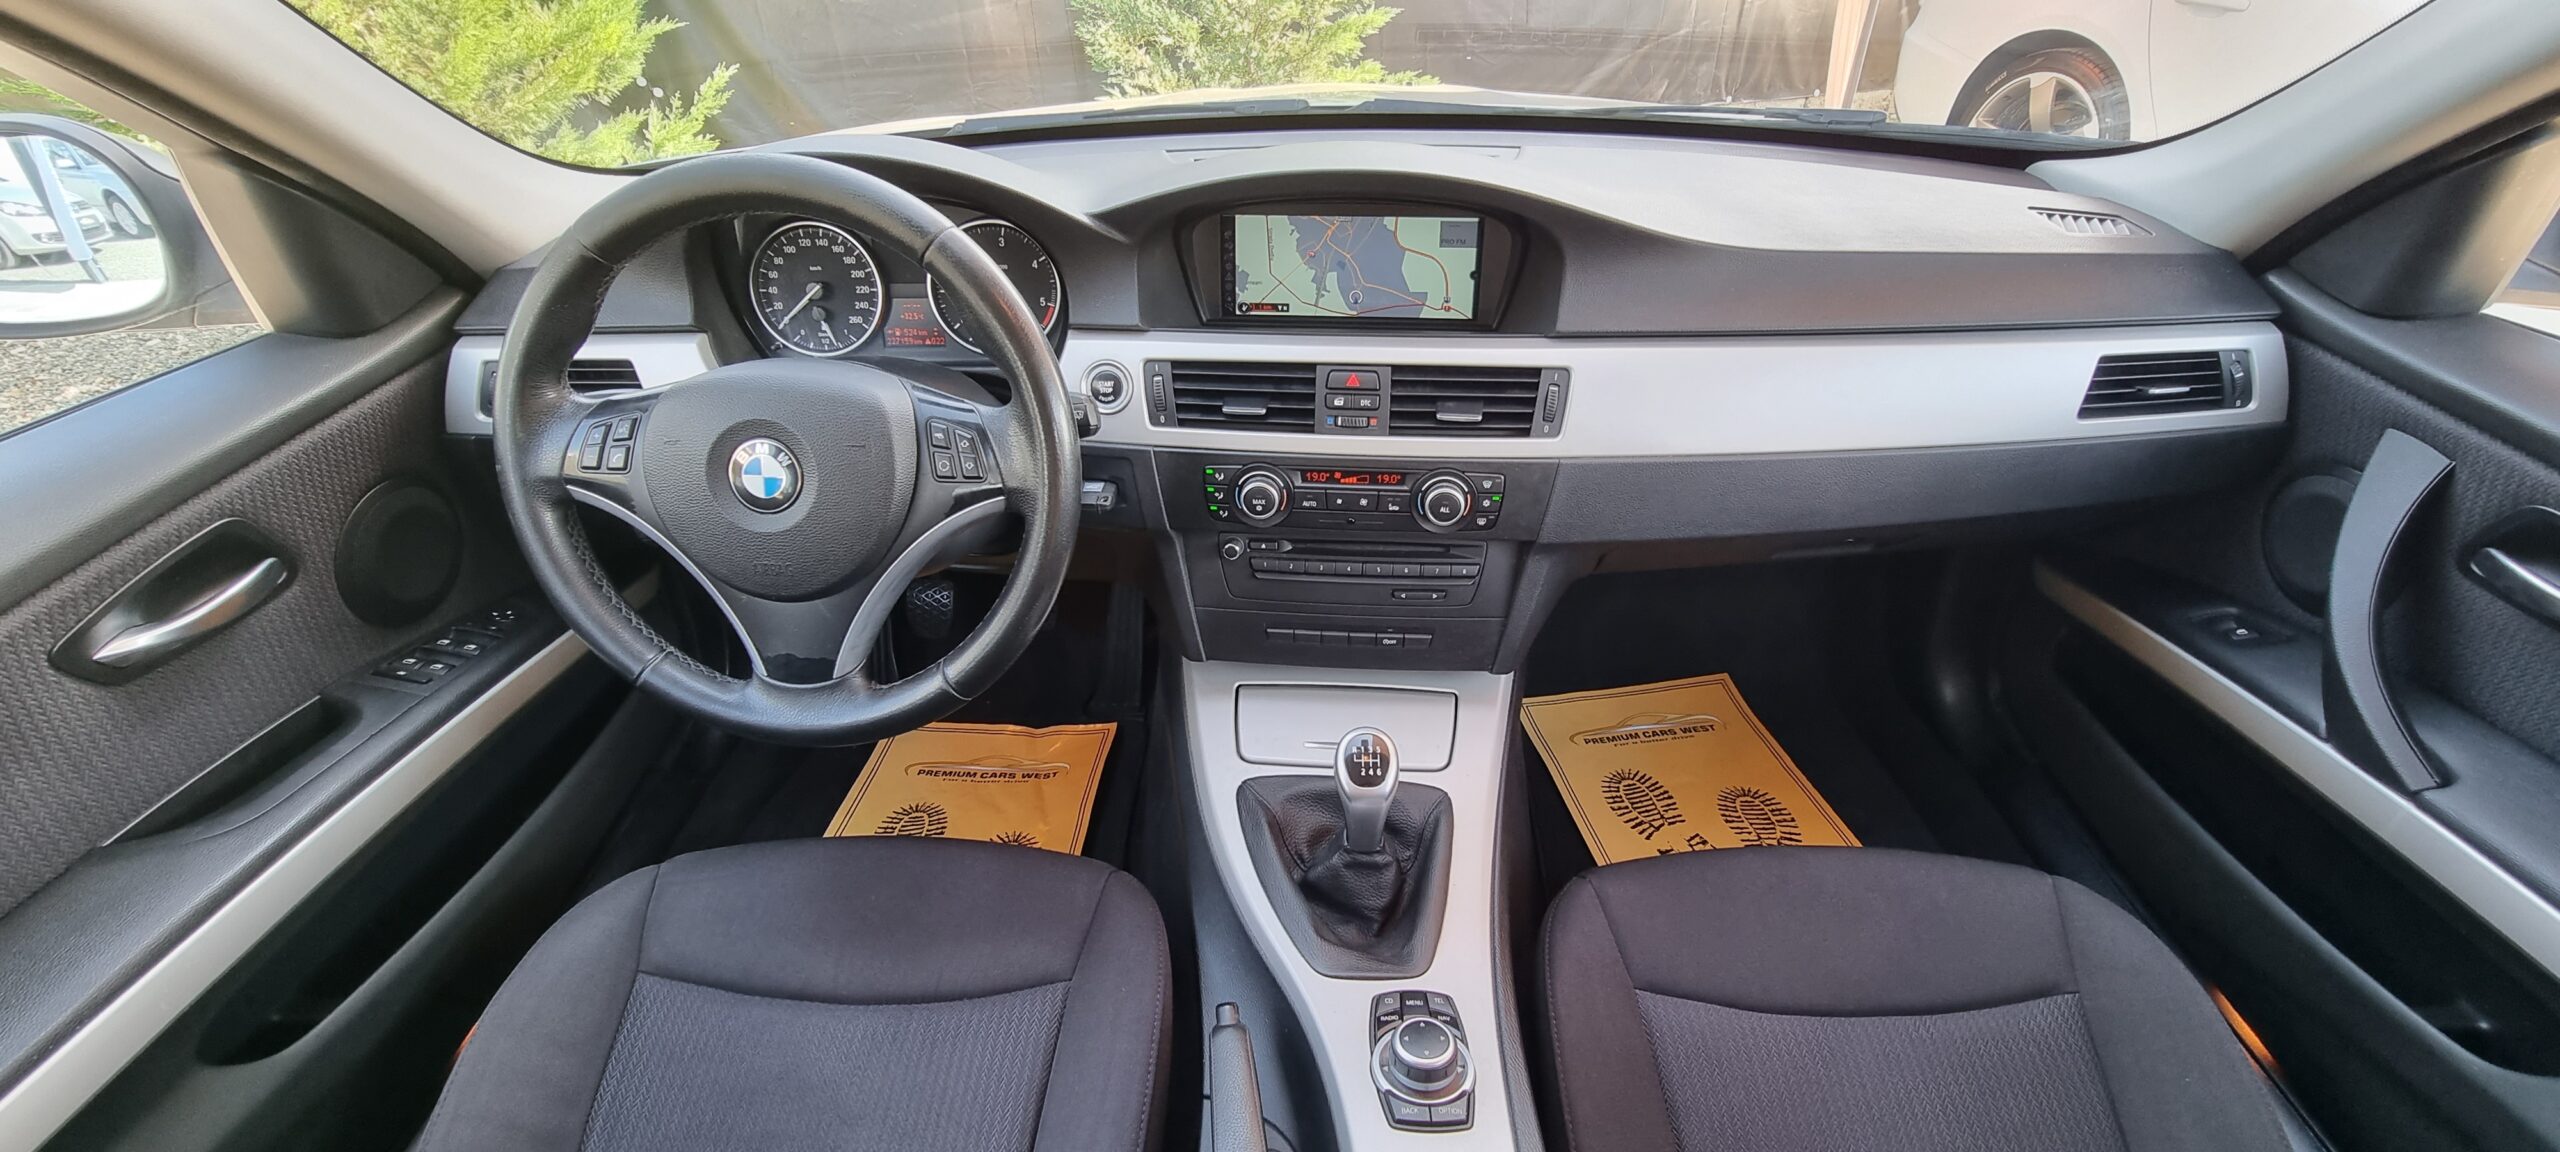 BMW SERIA 3, 2.0 DIESEL, 177 CP, EURO 5, AN 2009